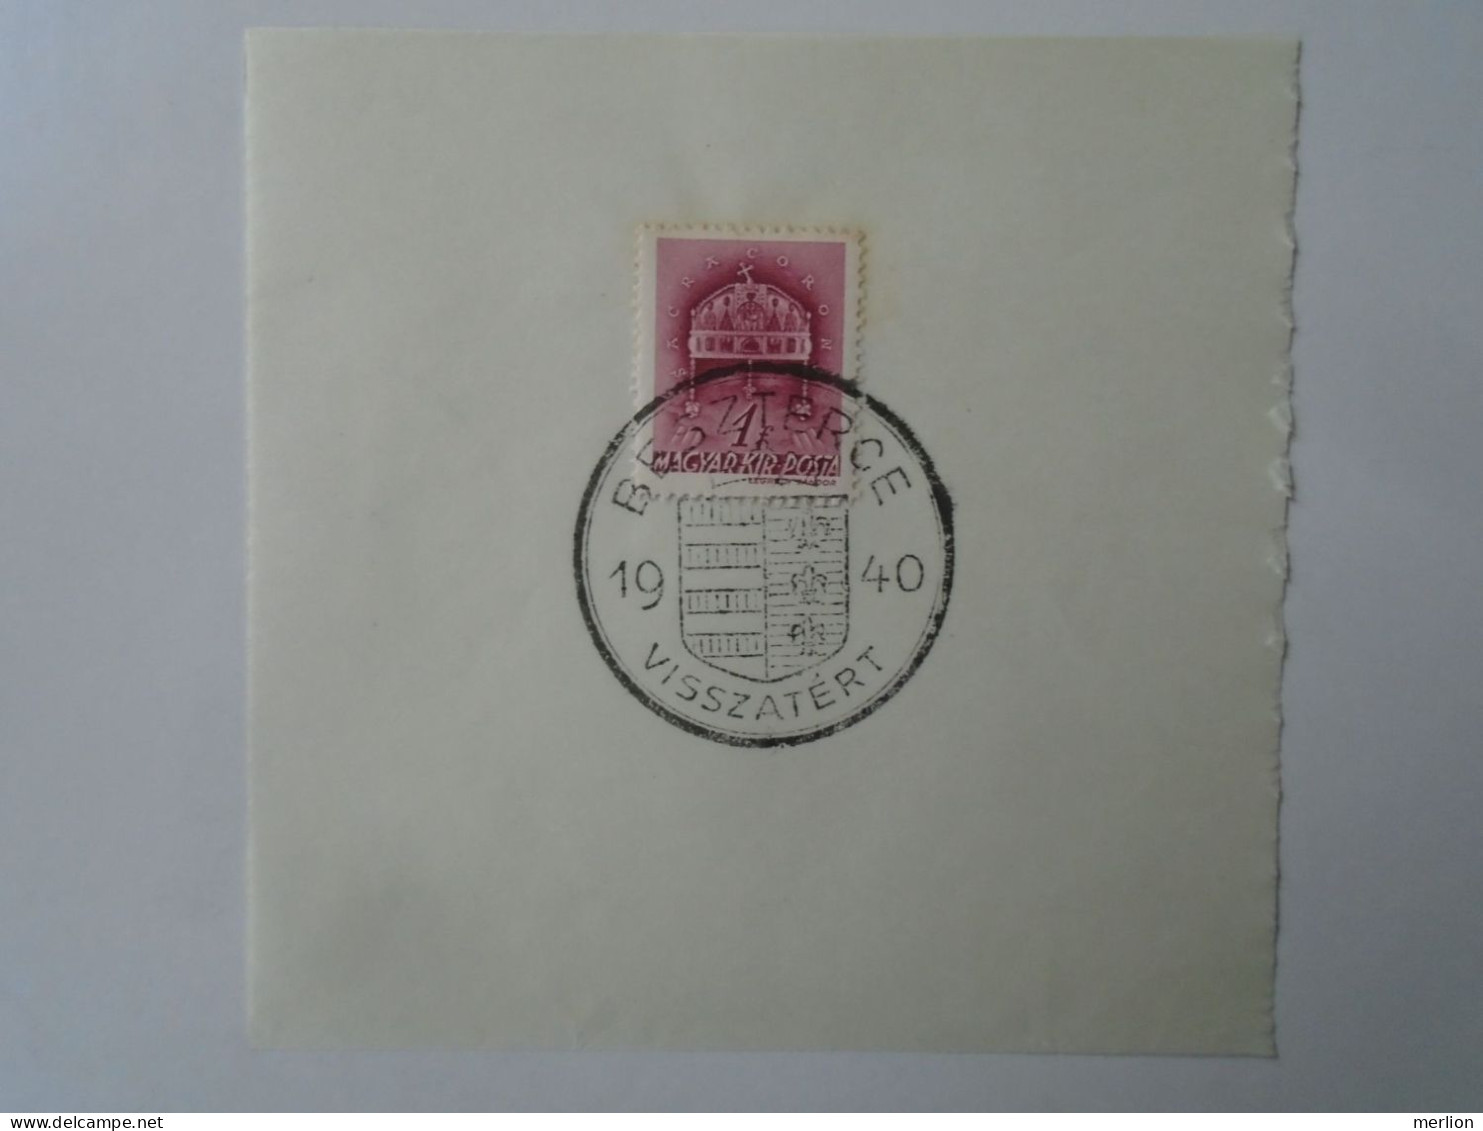 ZA451.64  Hungary - Beszterce  - Visszatért -Commemorative Postmark 1940 - Marcofilie